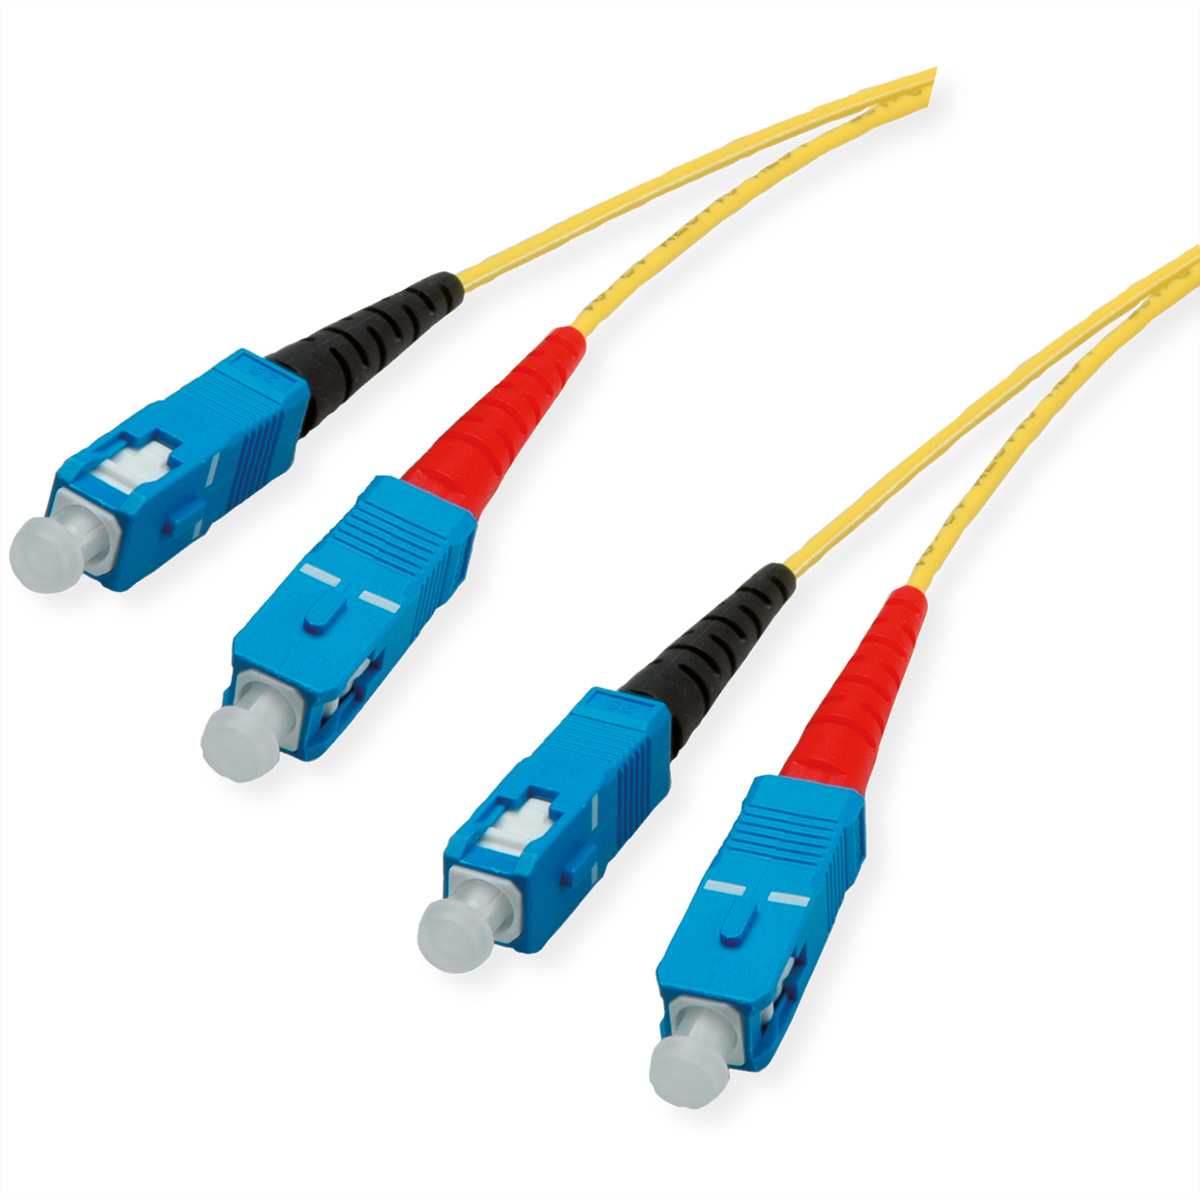 Quality LWL-Kabel Single Mode E9/125µm OS2, SC/SC, gelb, 2 m